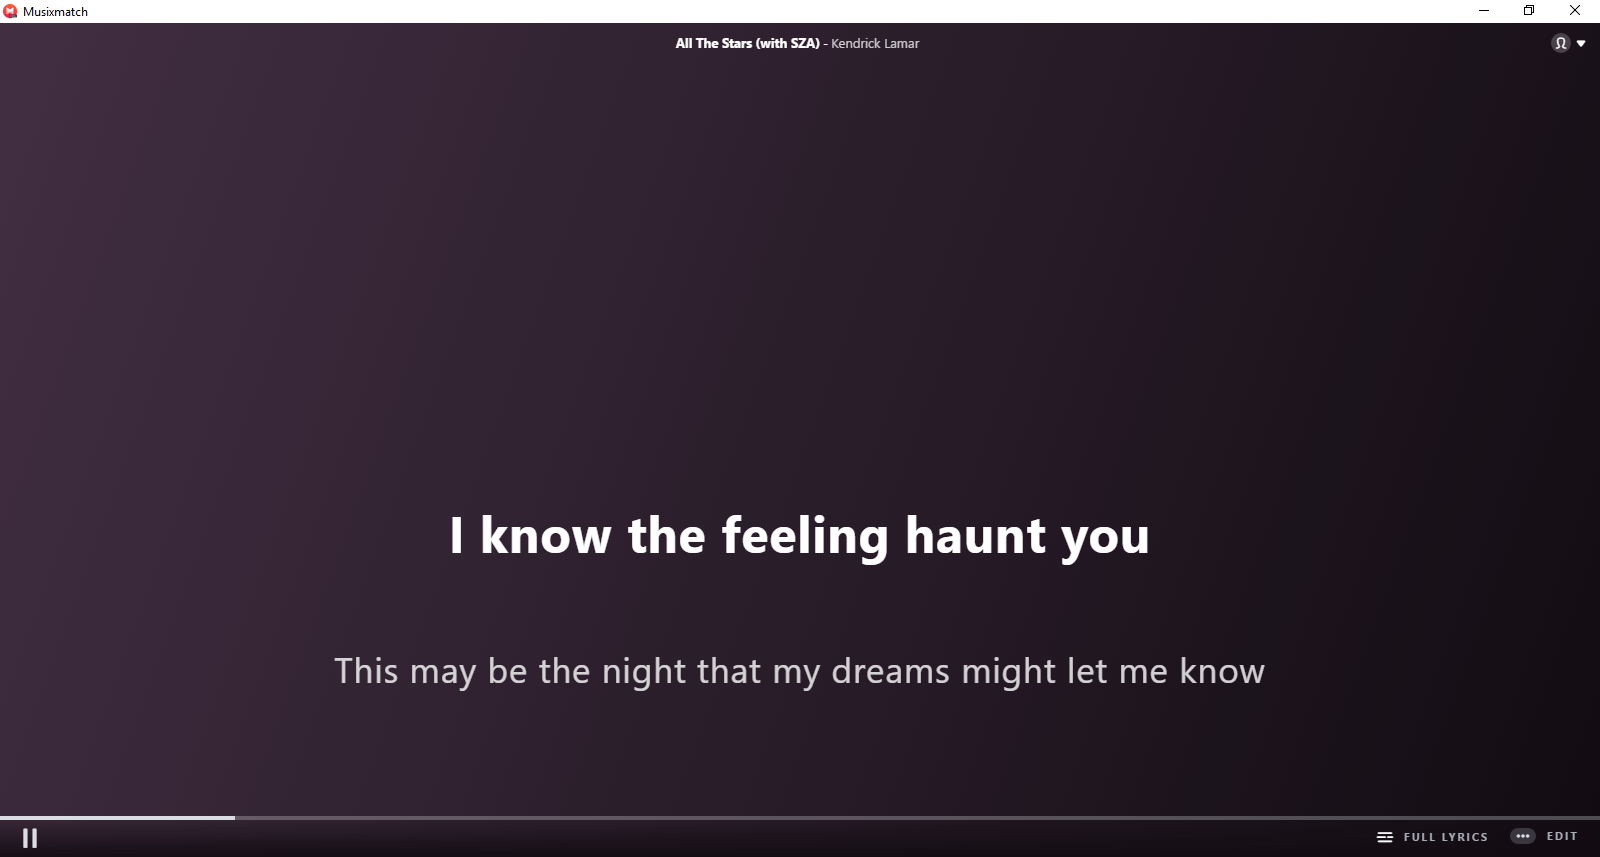 leer la letra de las canciones de Spotify en tu ordenador con windows